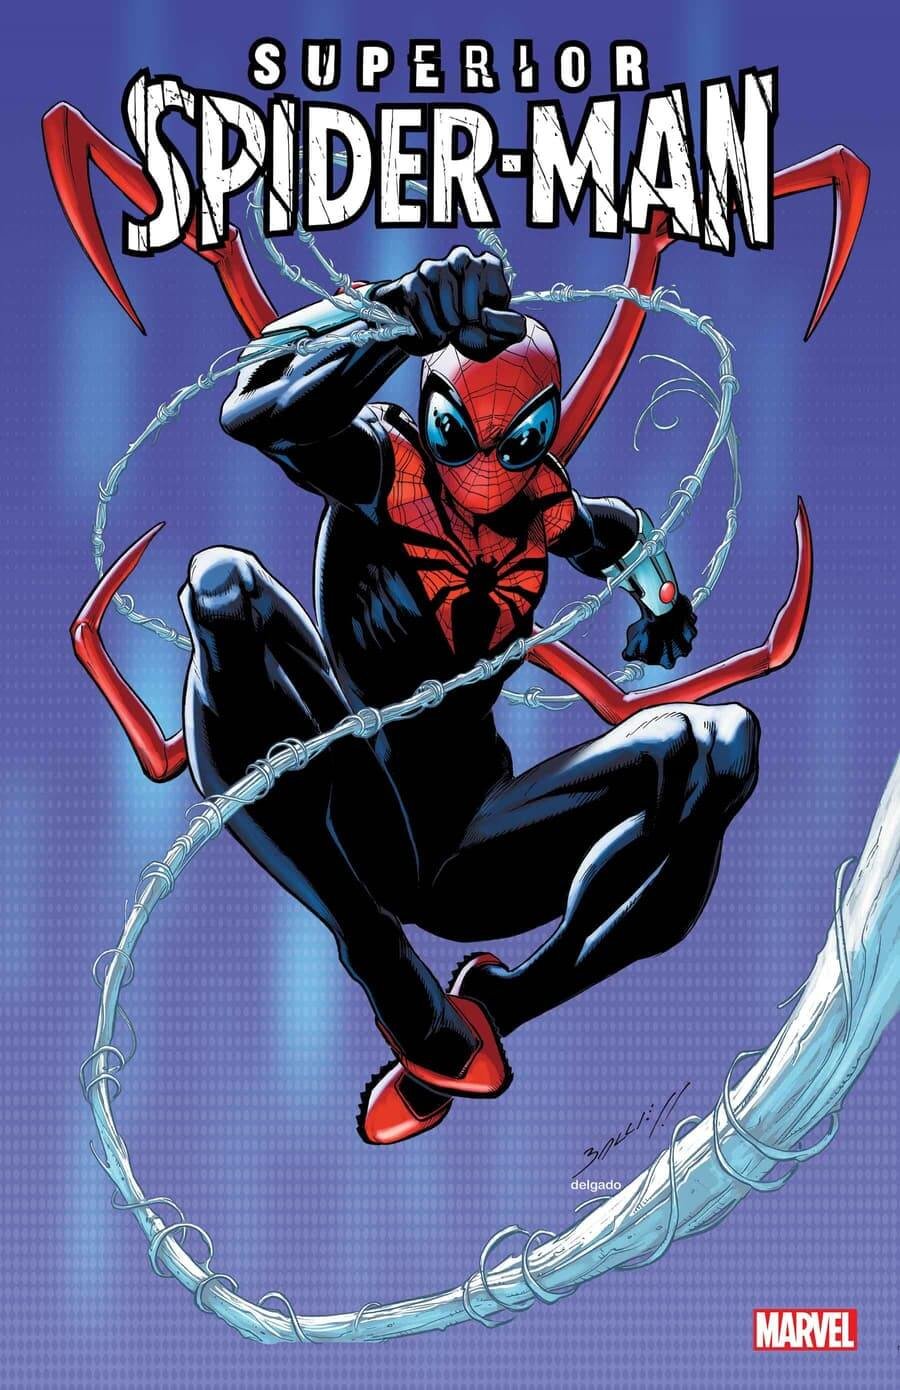 Couverture de Superior Spider-Man 1, par Mark Bagley, citant la précédente série régulière de Spider-Man du même auteur.